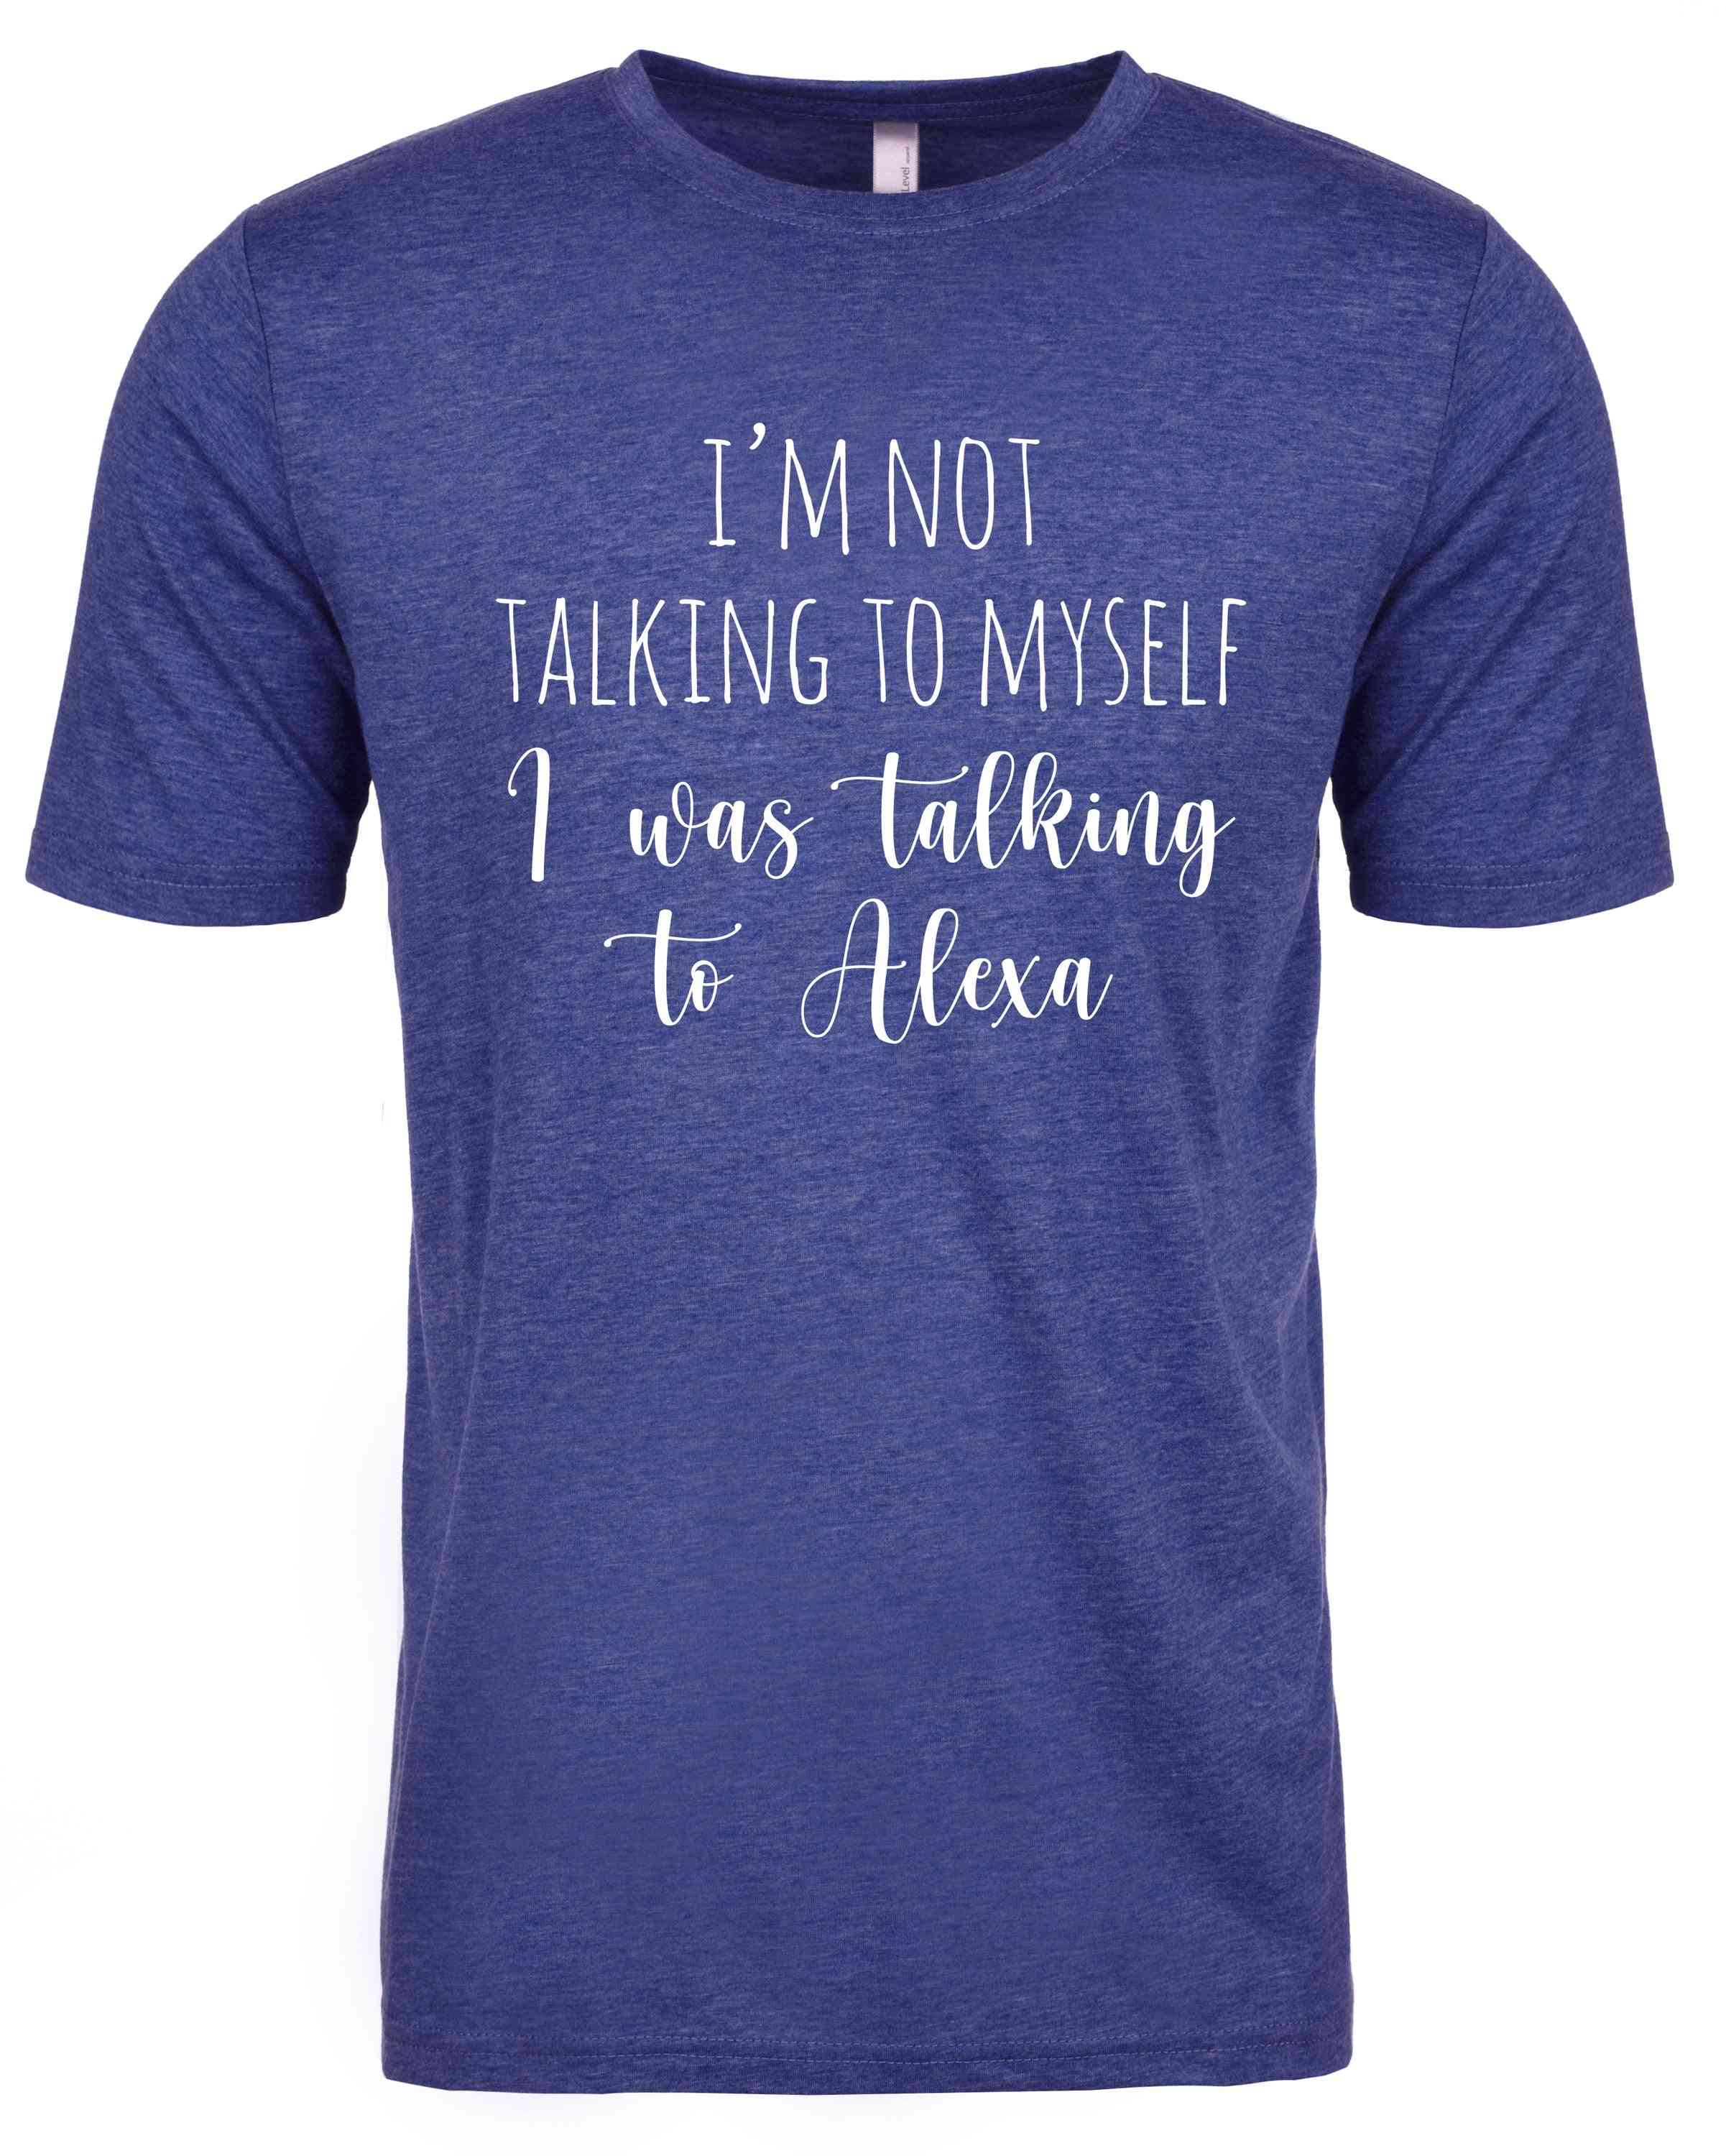 Nemluvím sám pro sebe mluvil jsem s košilemi alexa batolatami ženami